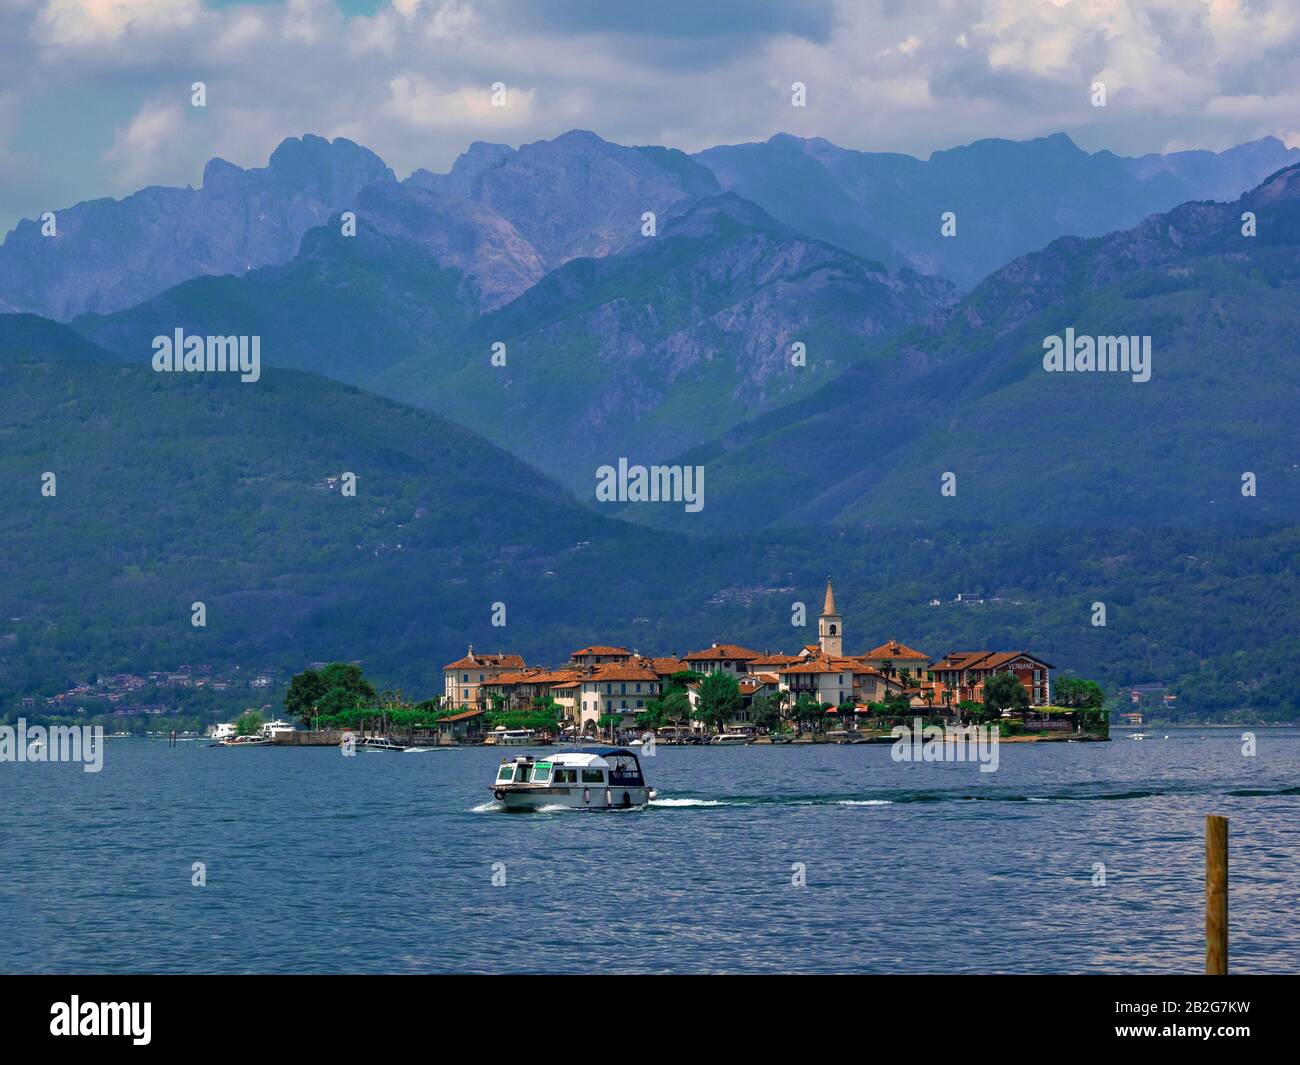 Isola di pescatori, la piccola isola del Lago maggiore vista dal lungolago di Stresa. Foto Stock